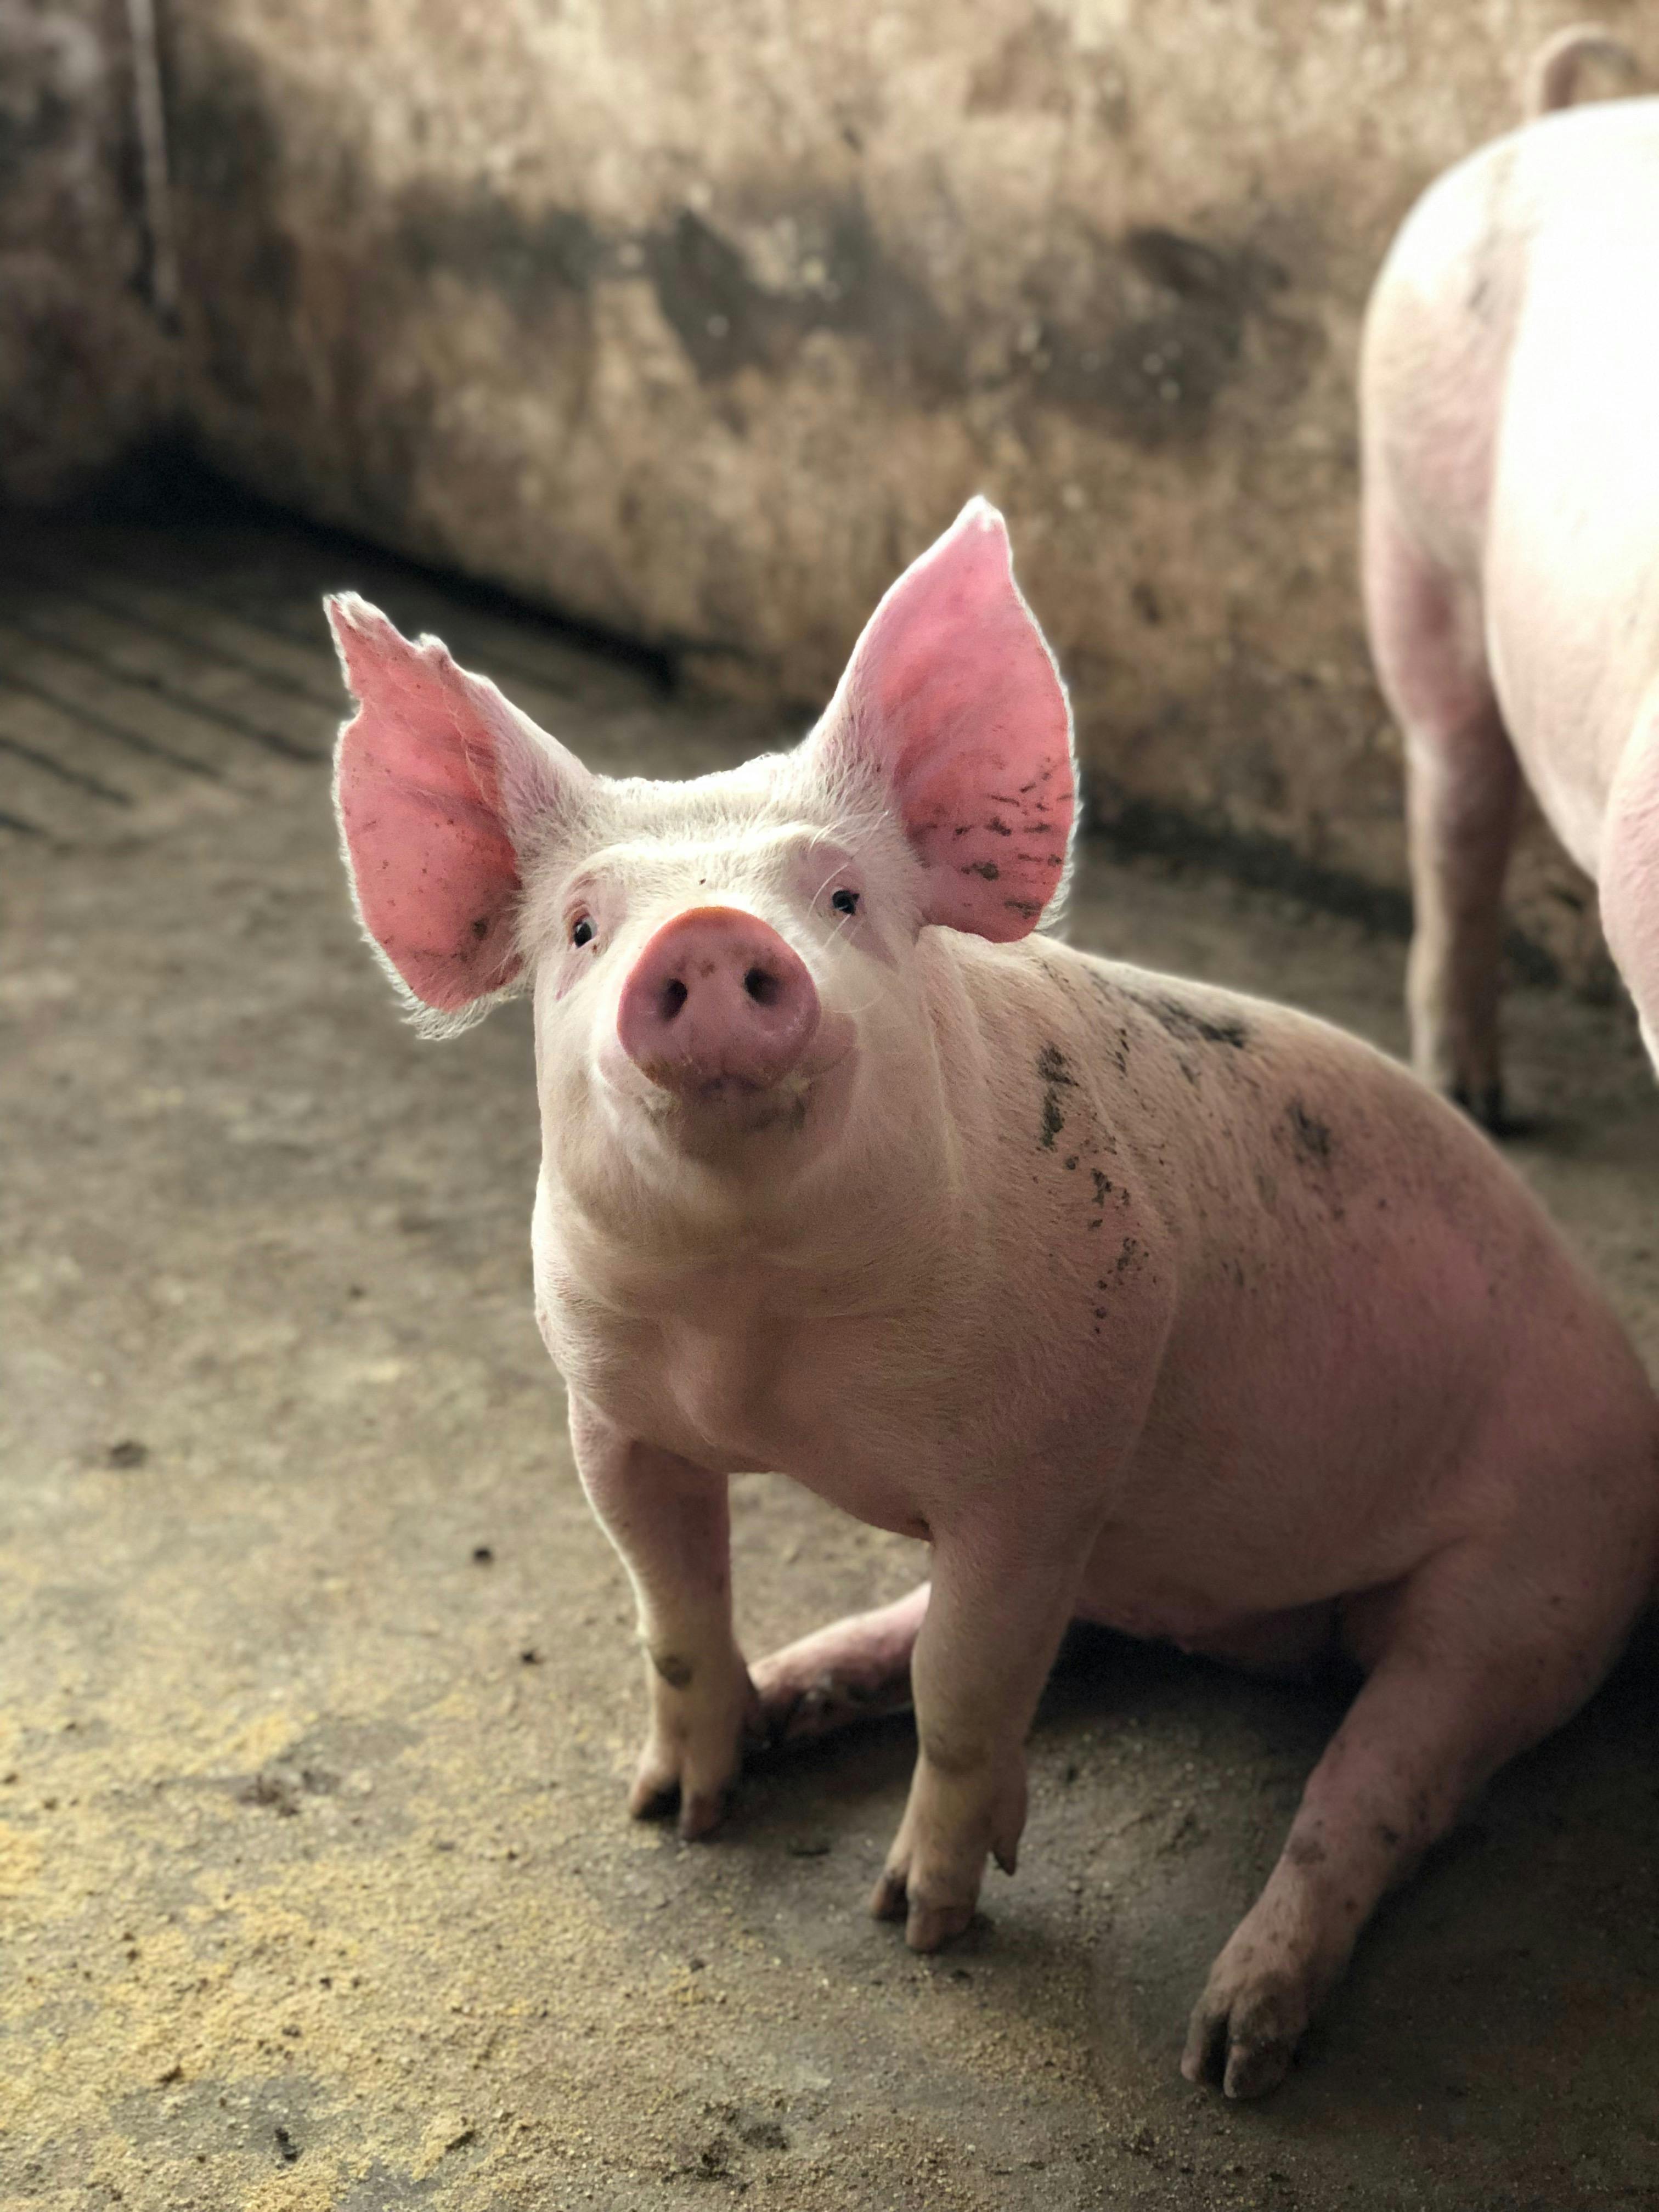 cute pig sitting in barn